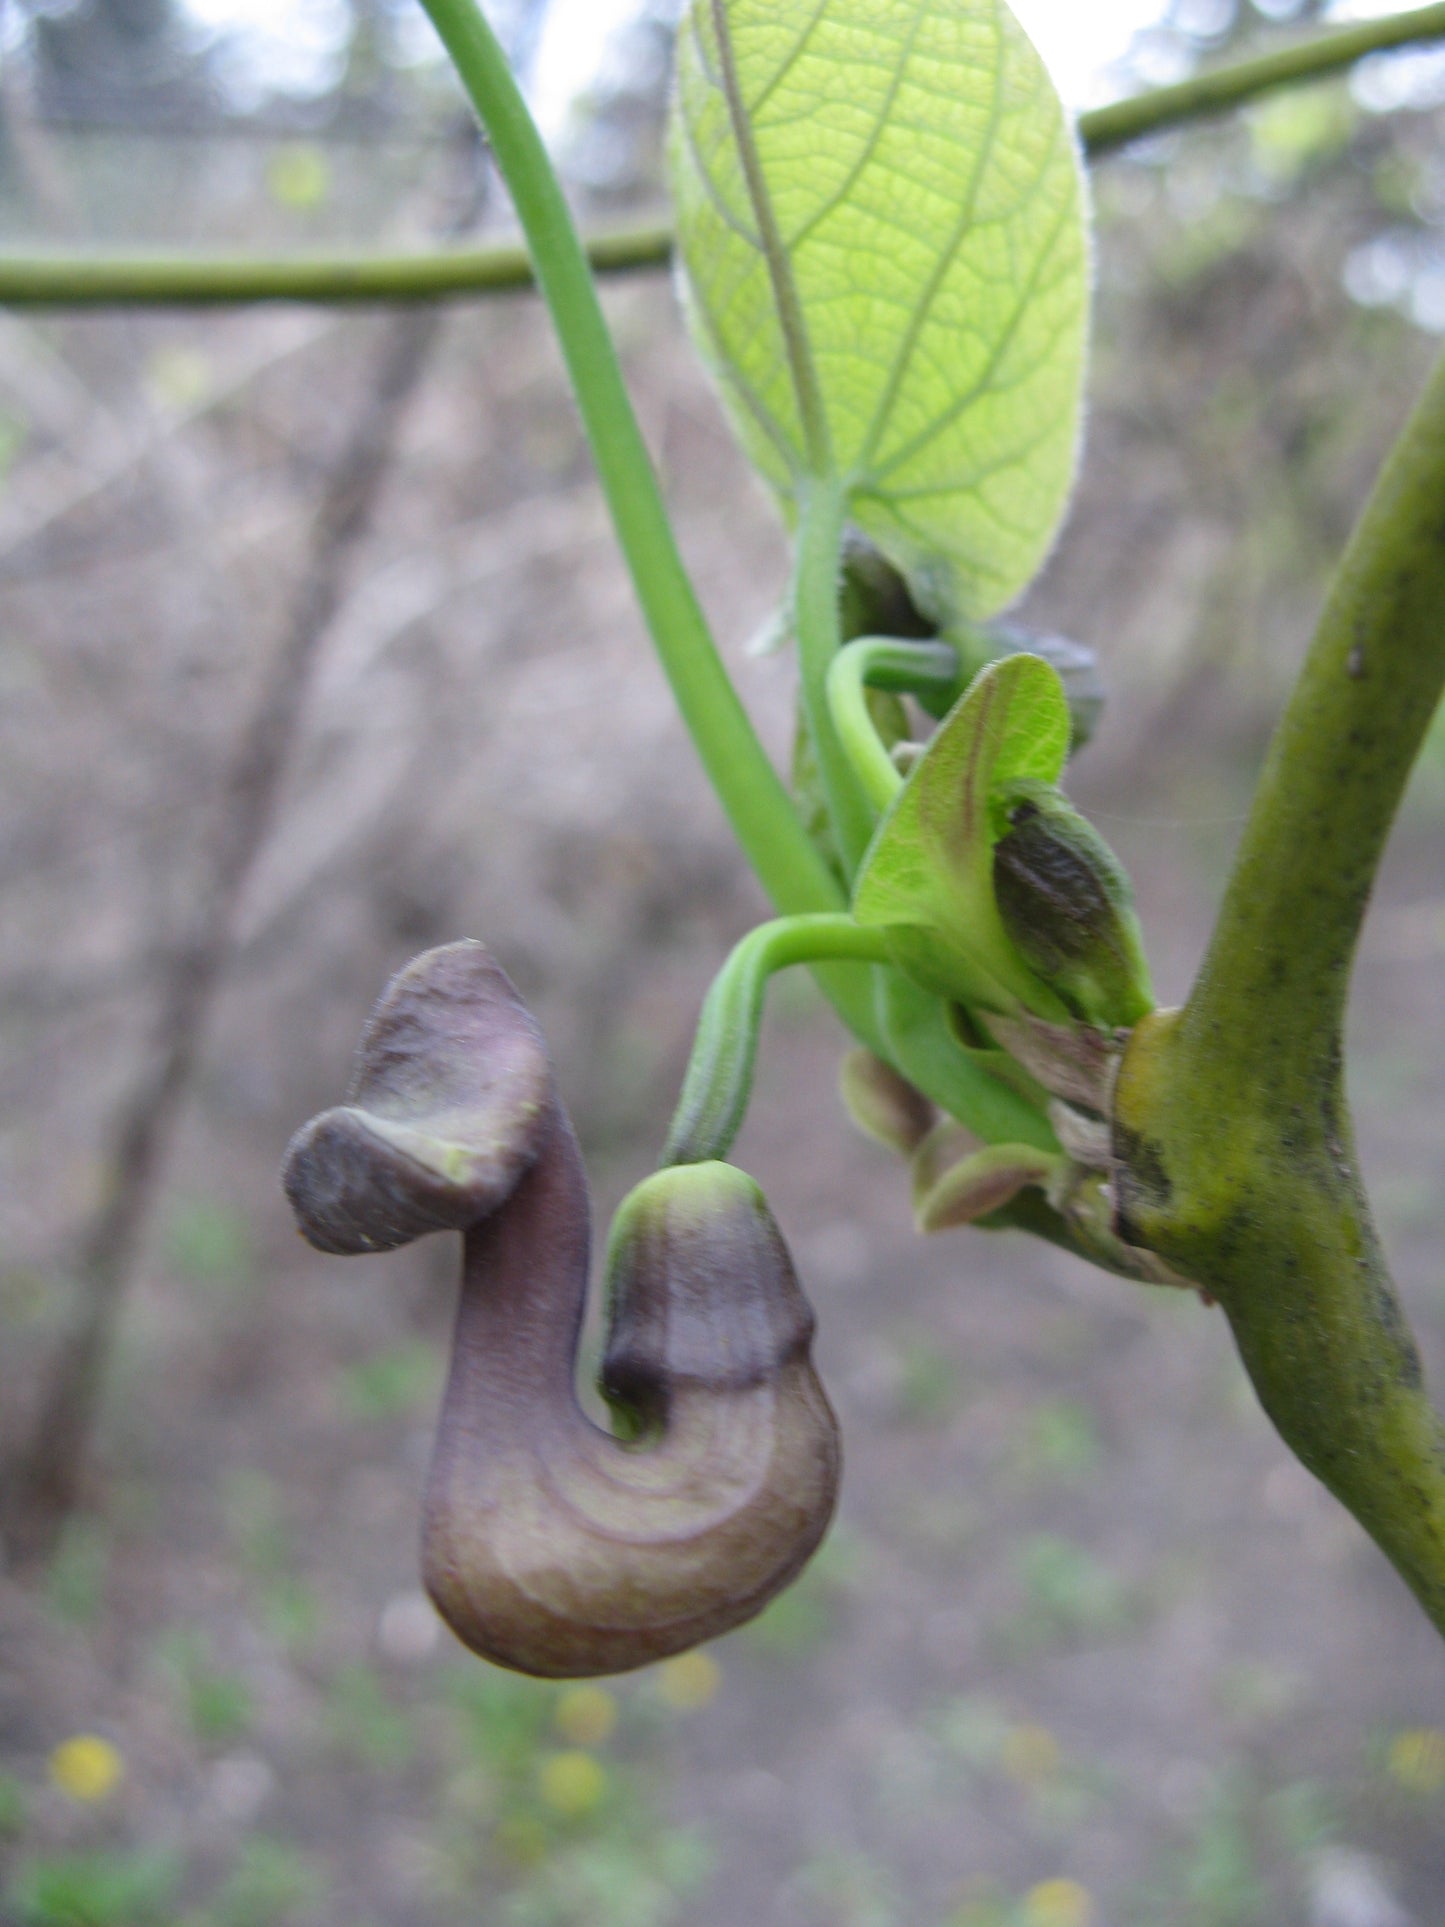 Chinese Aristolochia (Aristolochia manshuriensis)